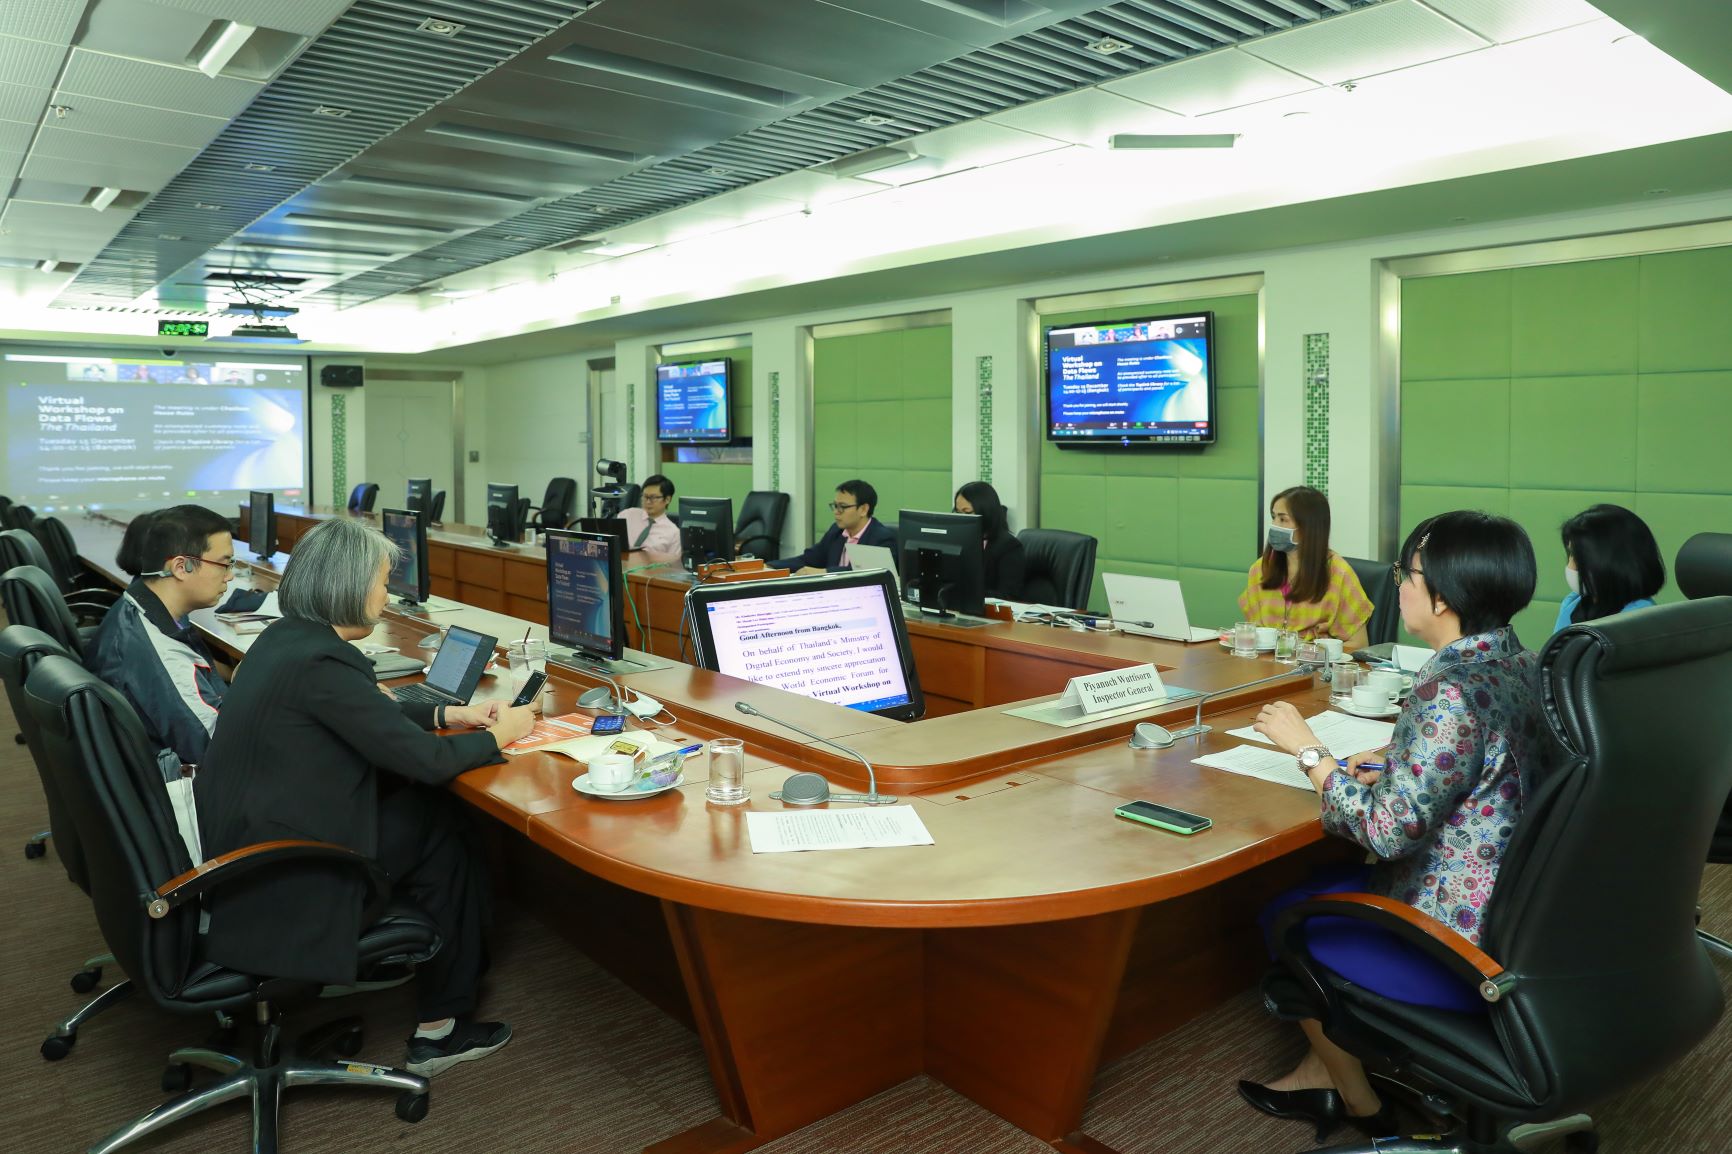 ดีอีเอส ร่วมประชุมเชิงปฏิบัติการของเวทีการประชุมเศรษฐกิจโลก (WEF)ภายใต้หัวข้อ Cross - border data flows in Thailand ผ่านระบบการประชุมทางไกล